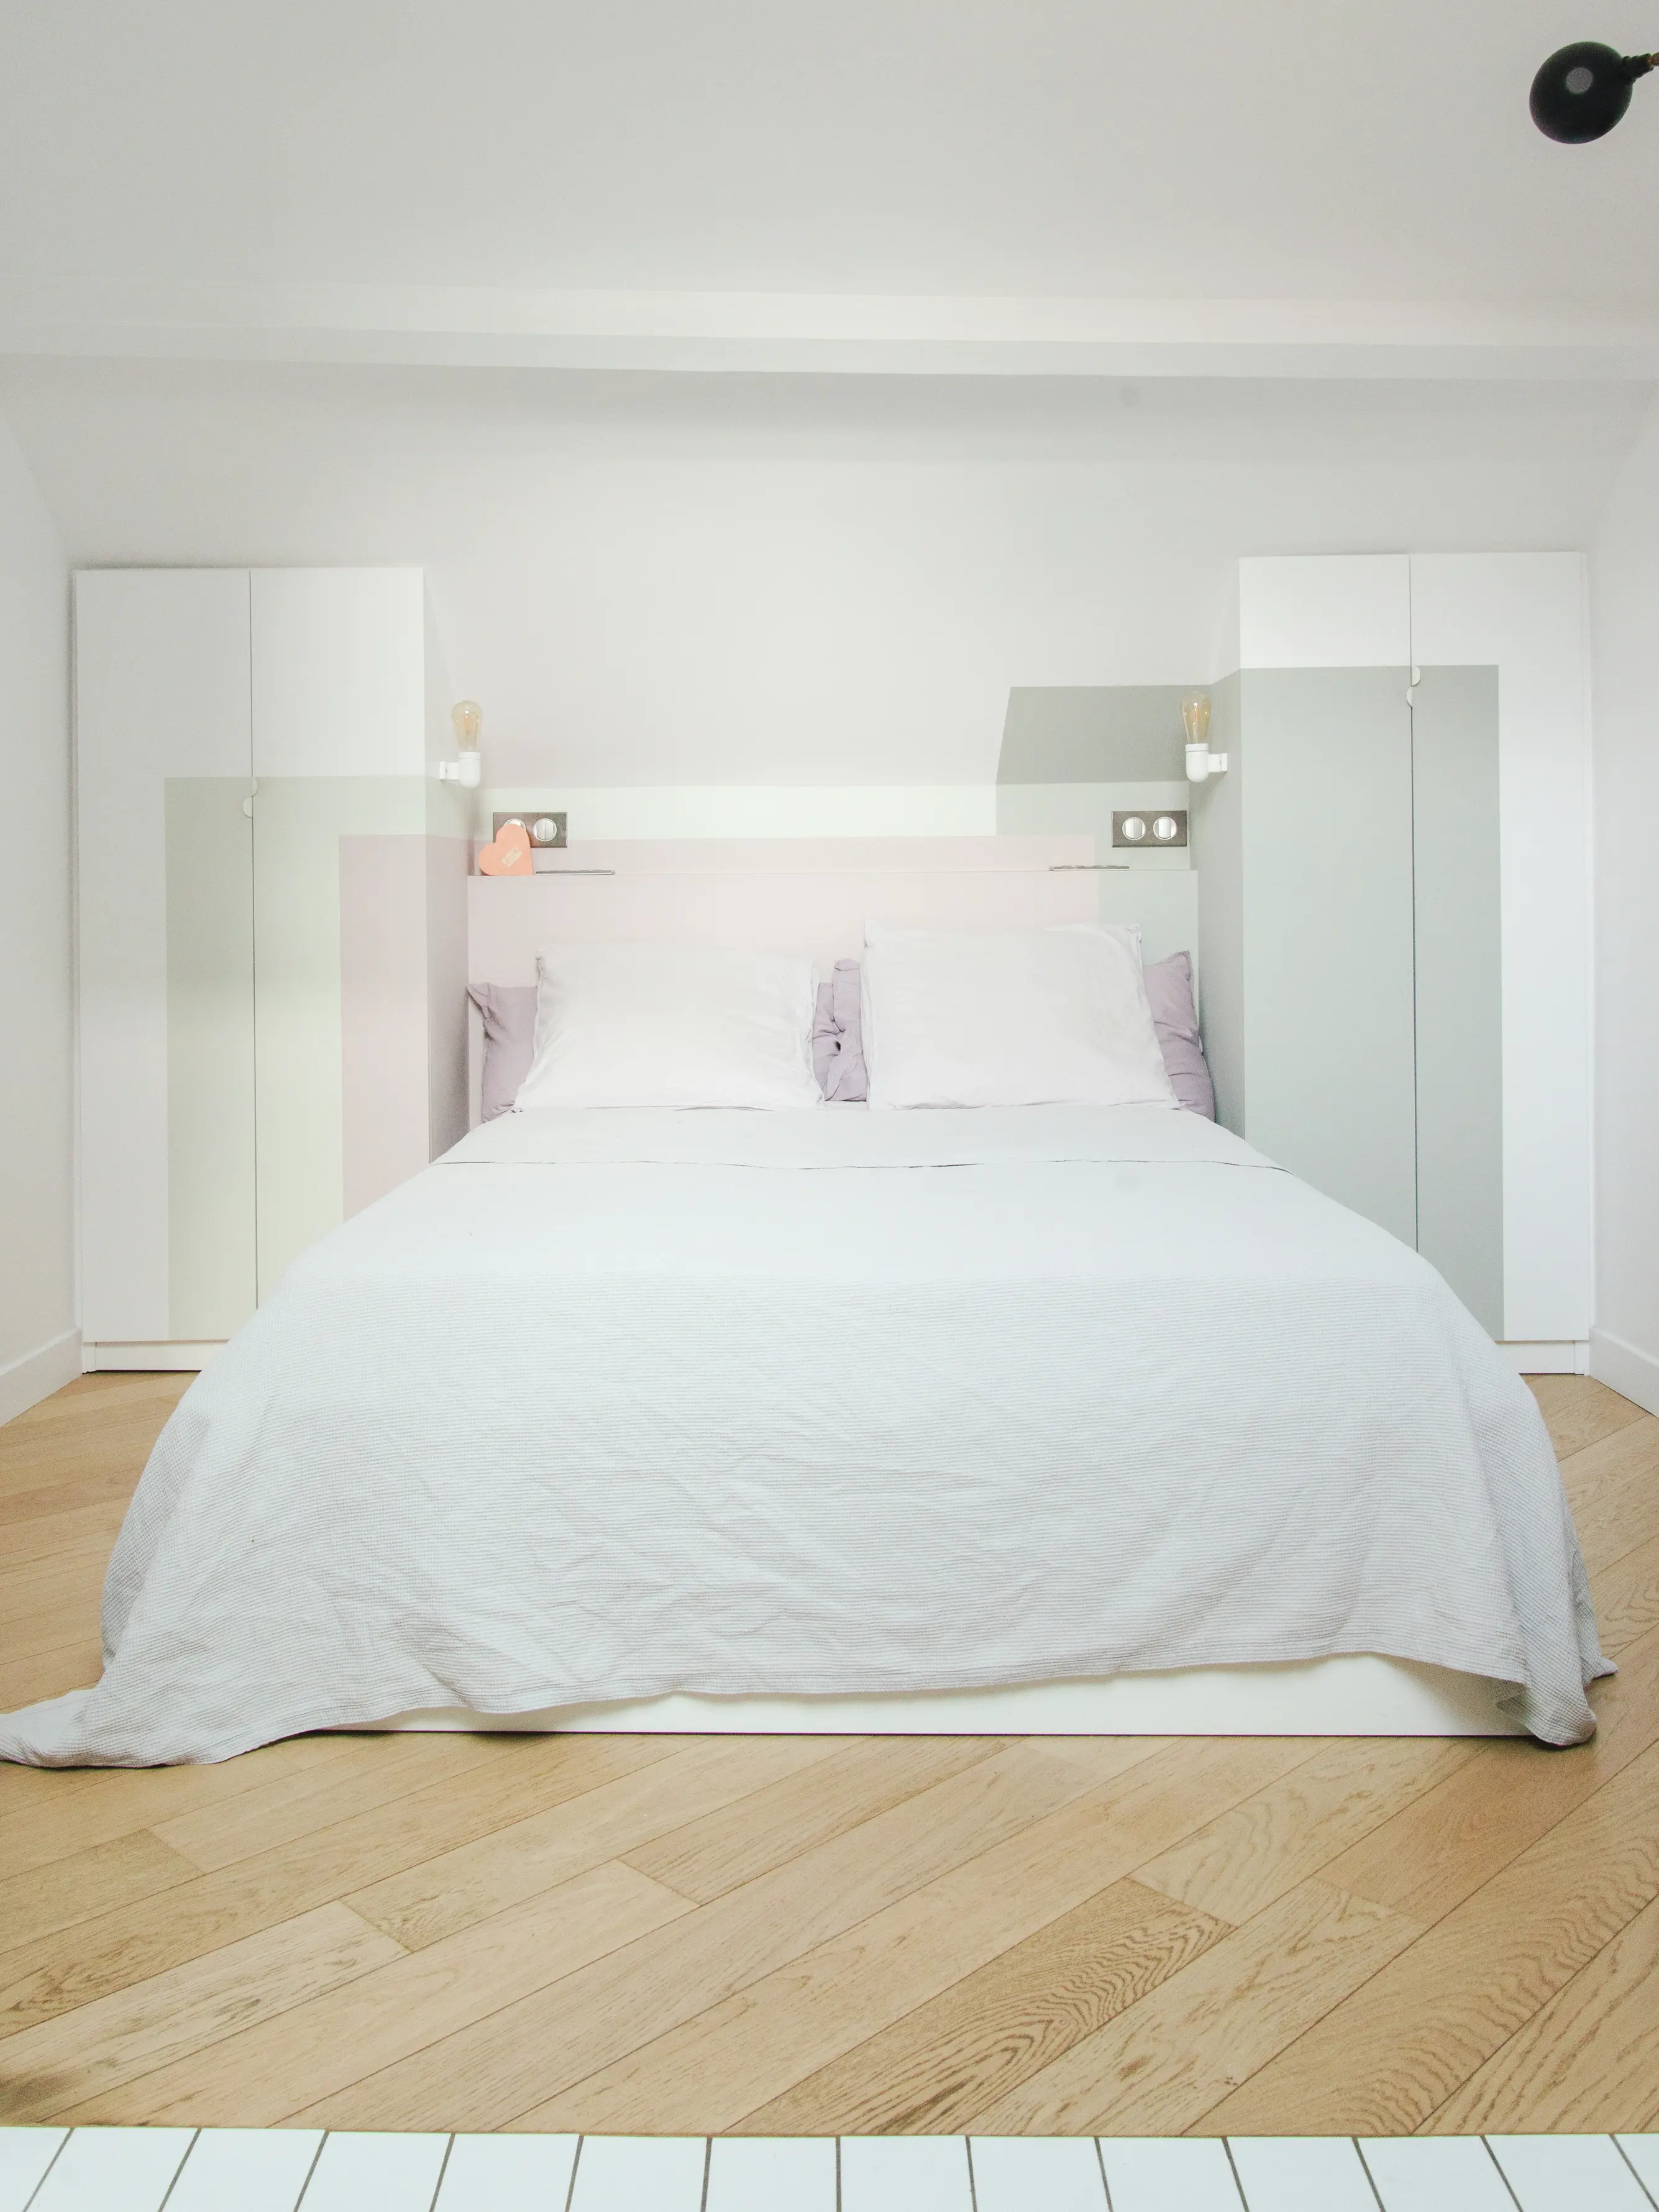 Camera da letto minimalista con biancheria da letto bianca, accenti color lavanda e pavimento a spina di pesce in legno.